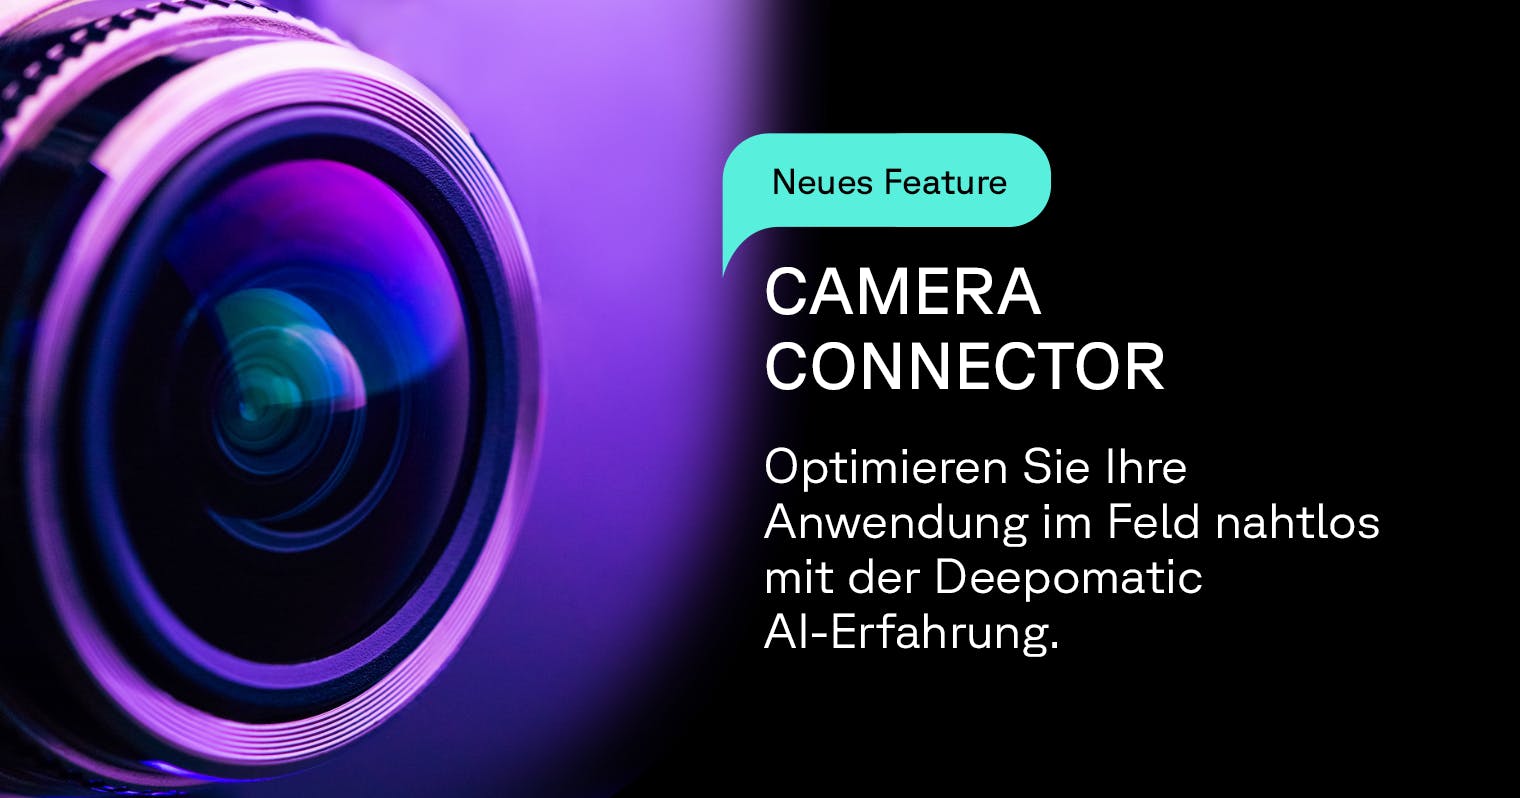 Deepomatic führt Camera Connector ein, um die Implementierung seiner automatisierten Qualitätskontrolllösung zu vereinfachen